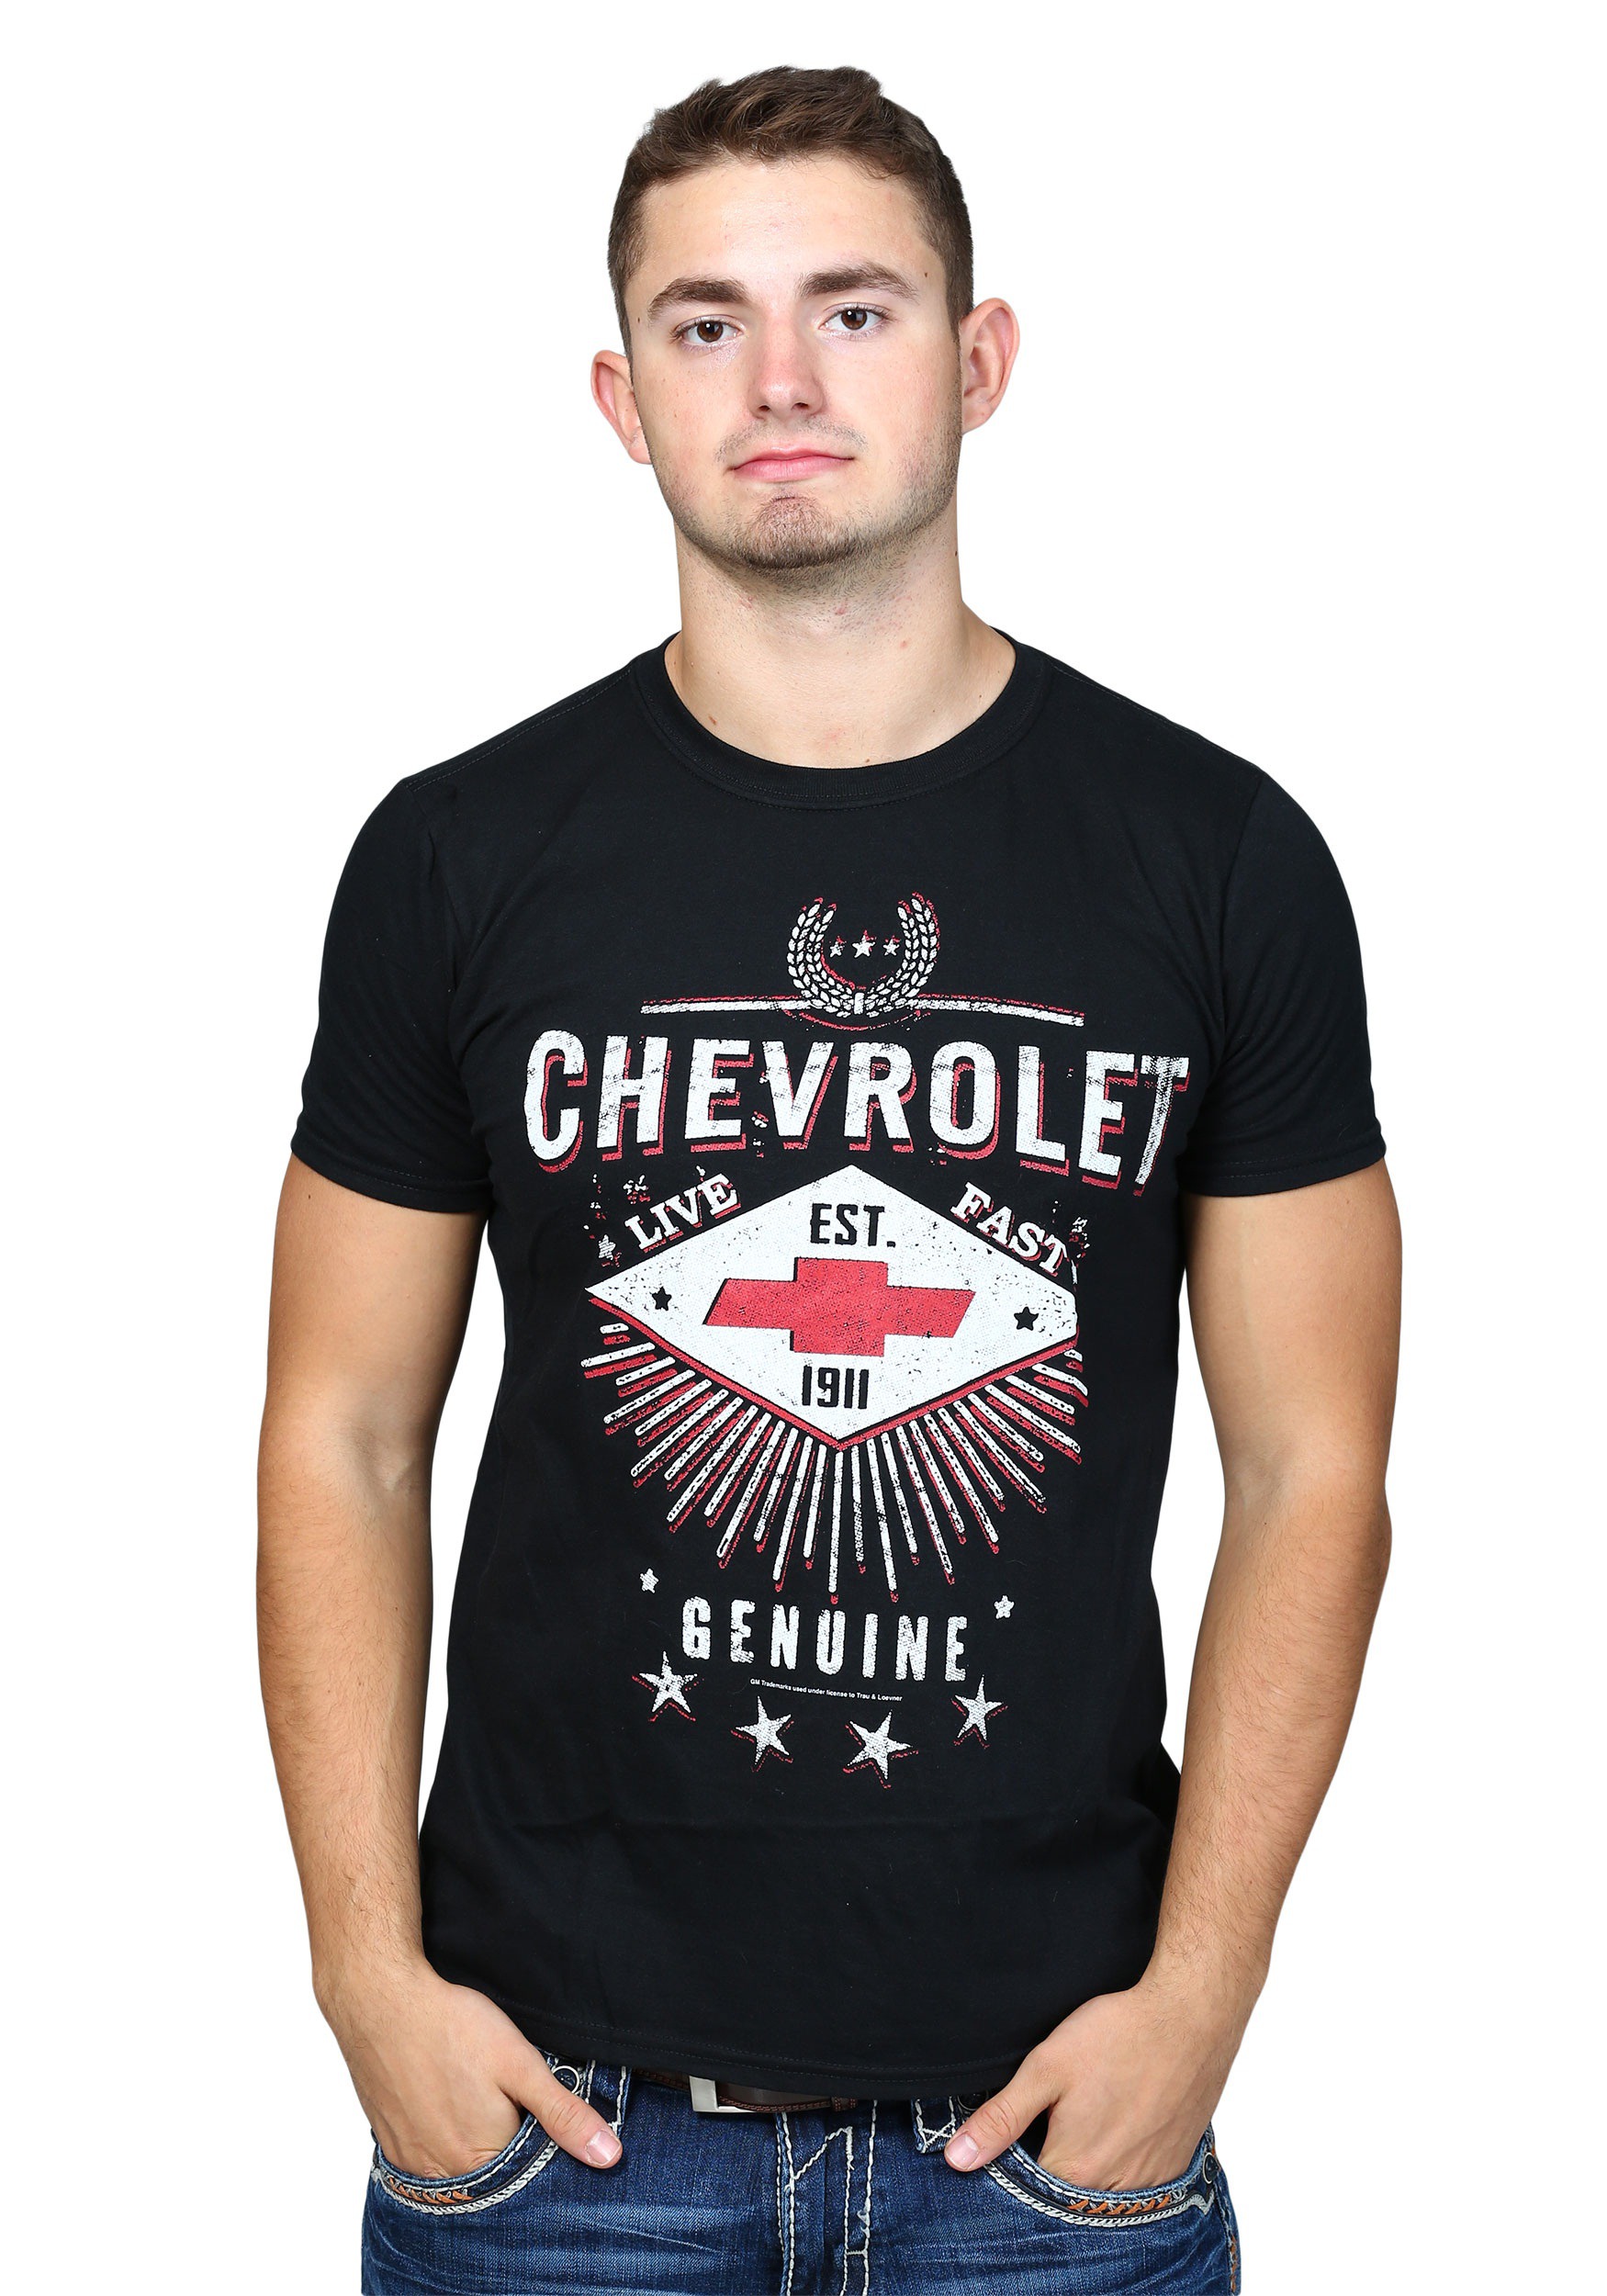 Chevrolet Live Fast Shirt for Men